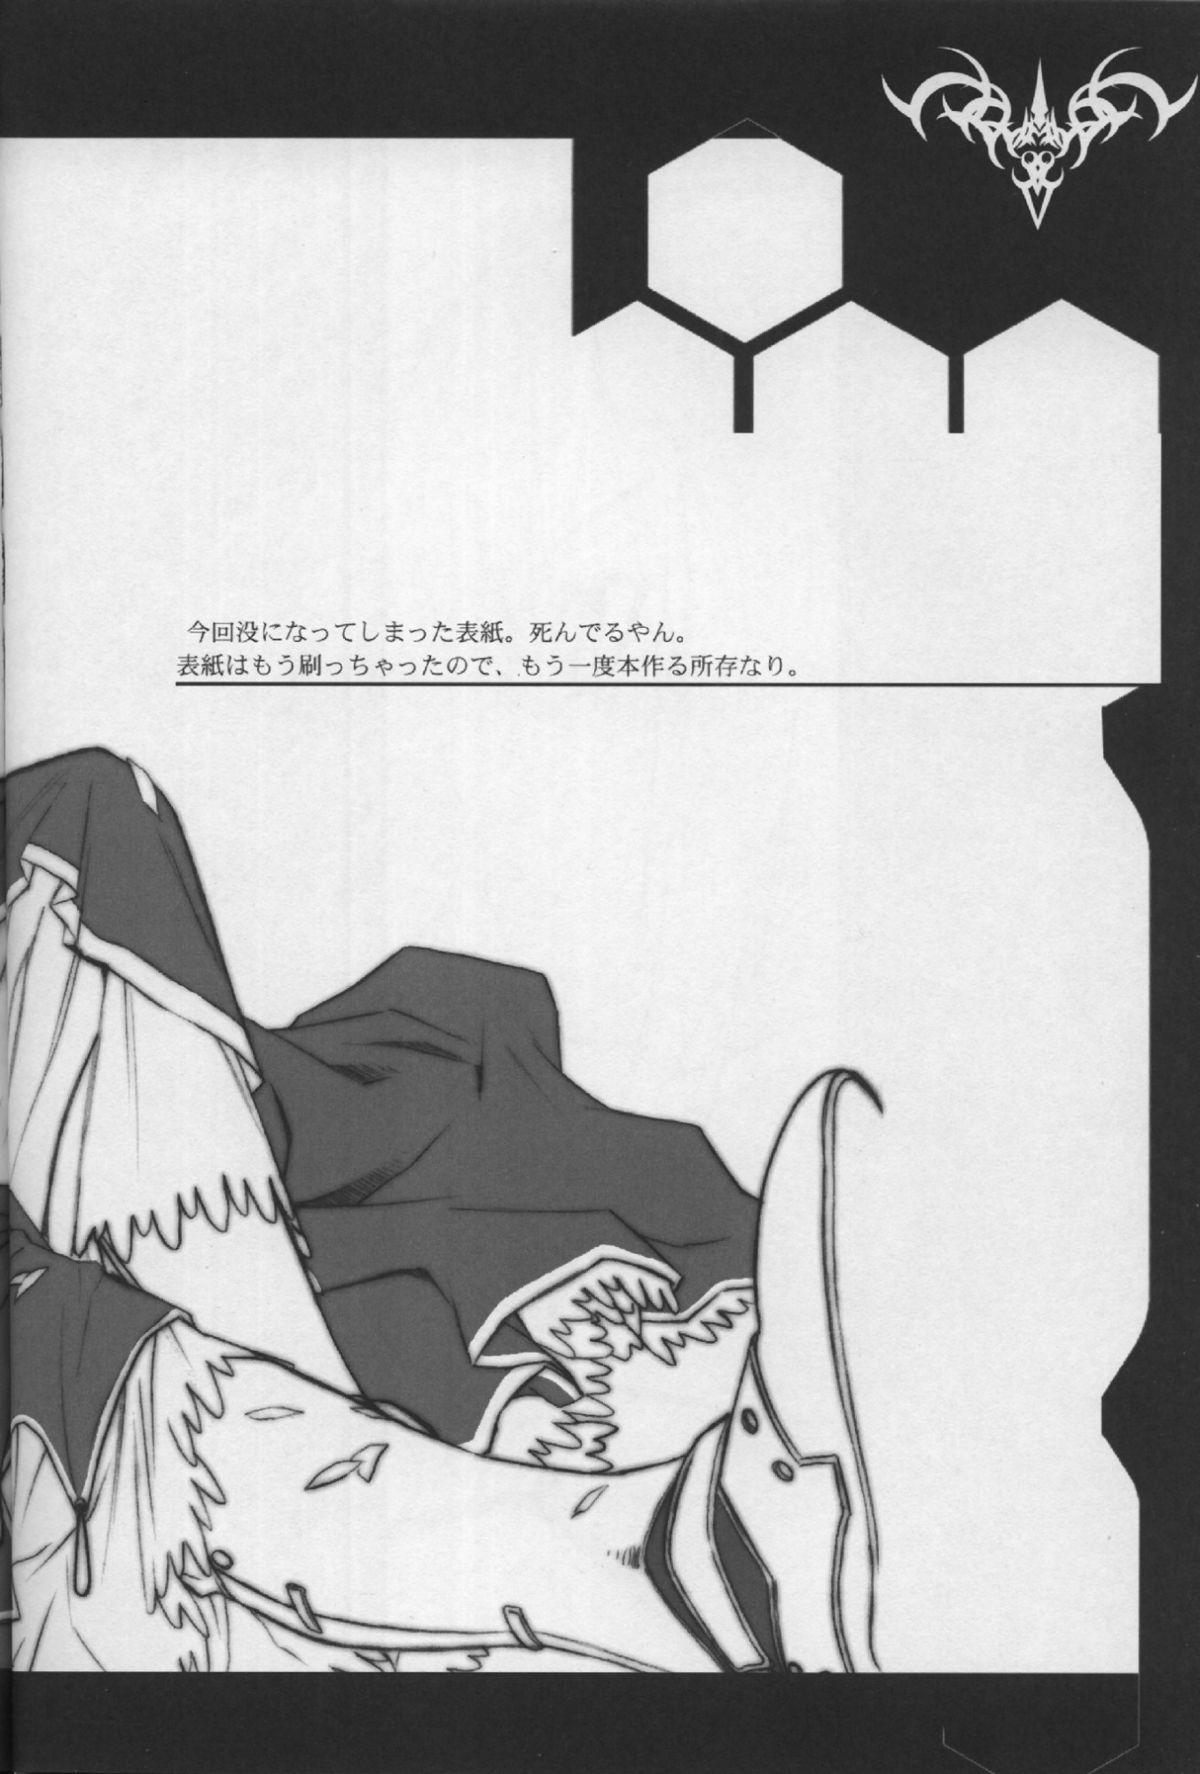 Couples Fate/Shisei Yon-shiki Doujin - Fate stay night Pete - Page 3